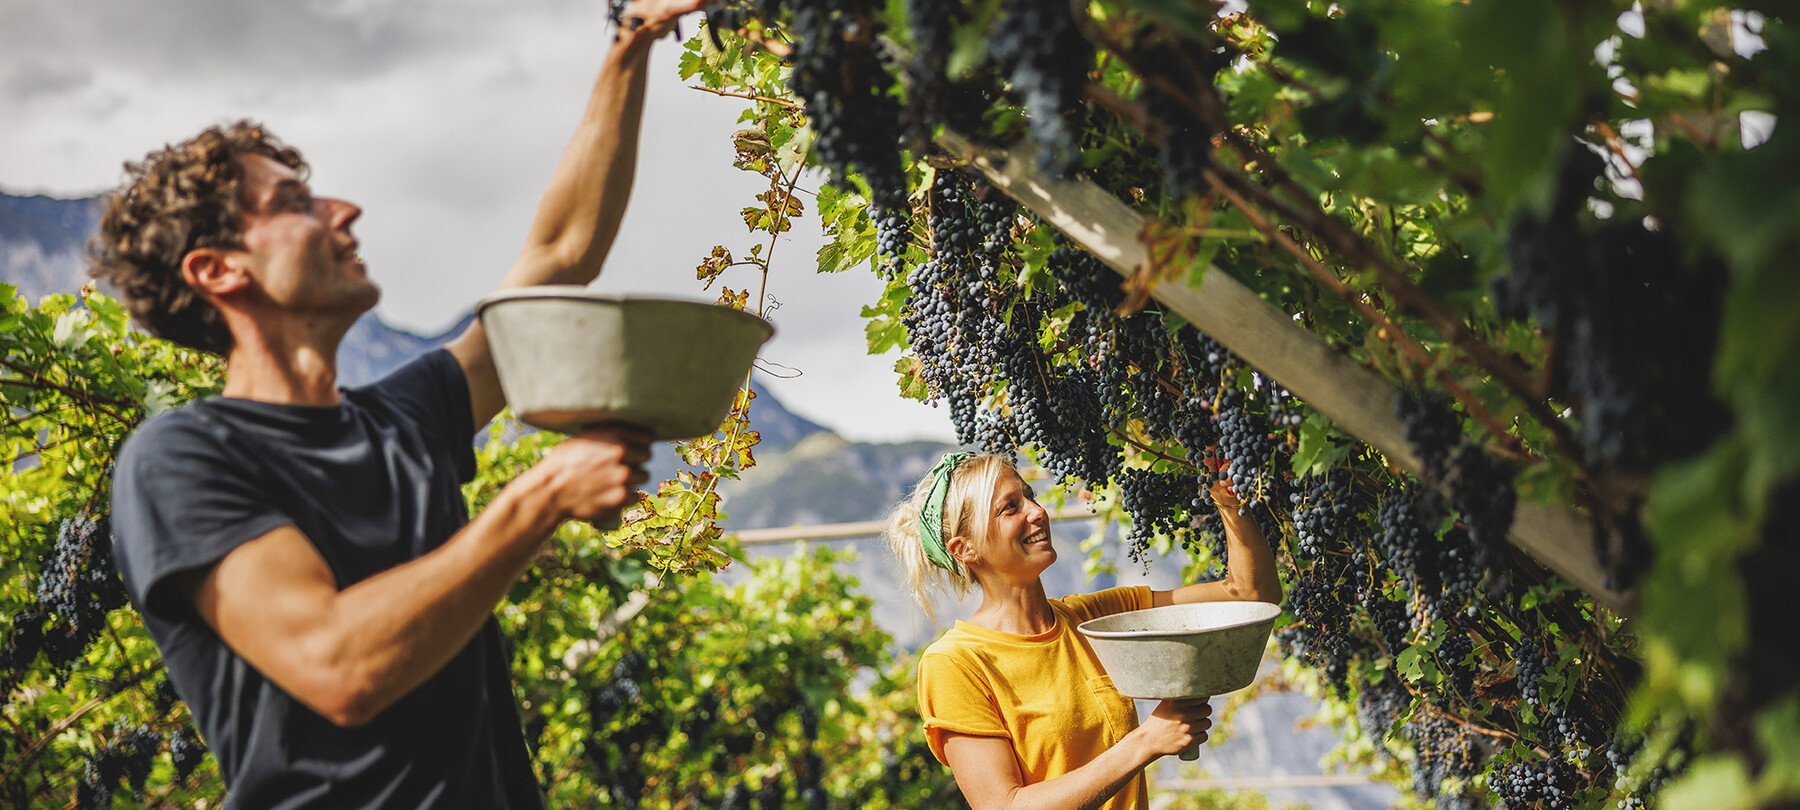 Трентино гордится традициями виноделия, которое насчитывает тысячи лет